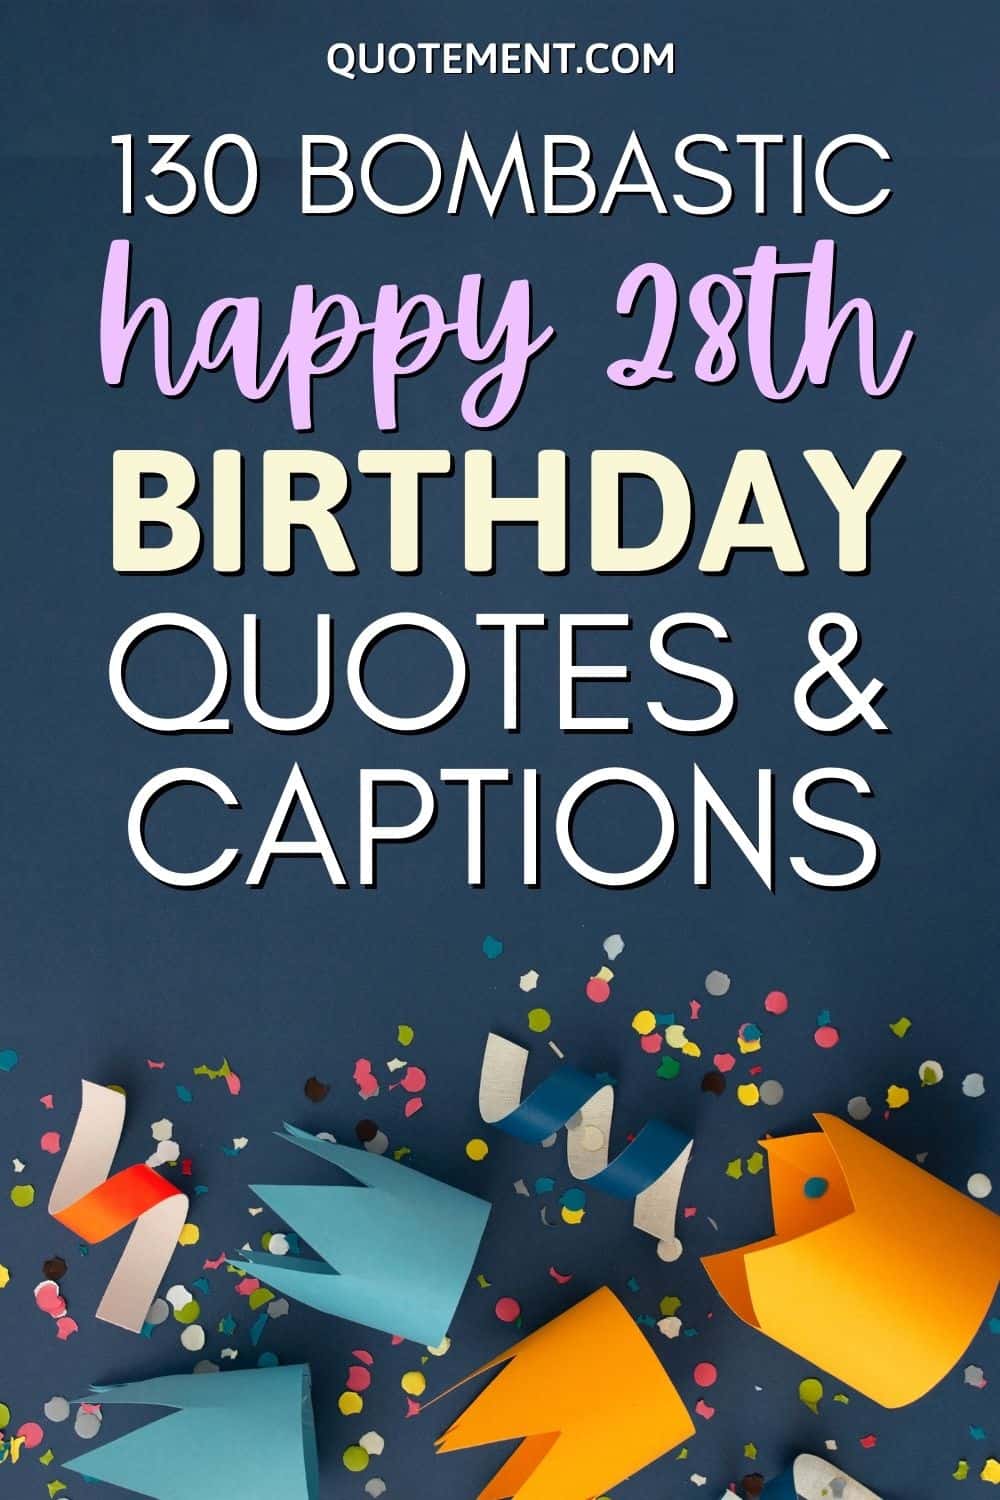 130 Bombastic Happy 28th Birthday Quotes & Captions